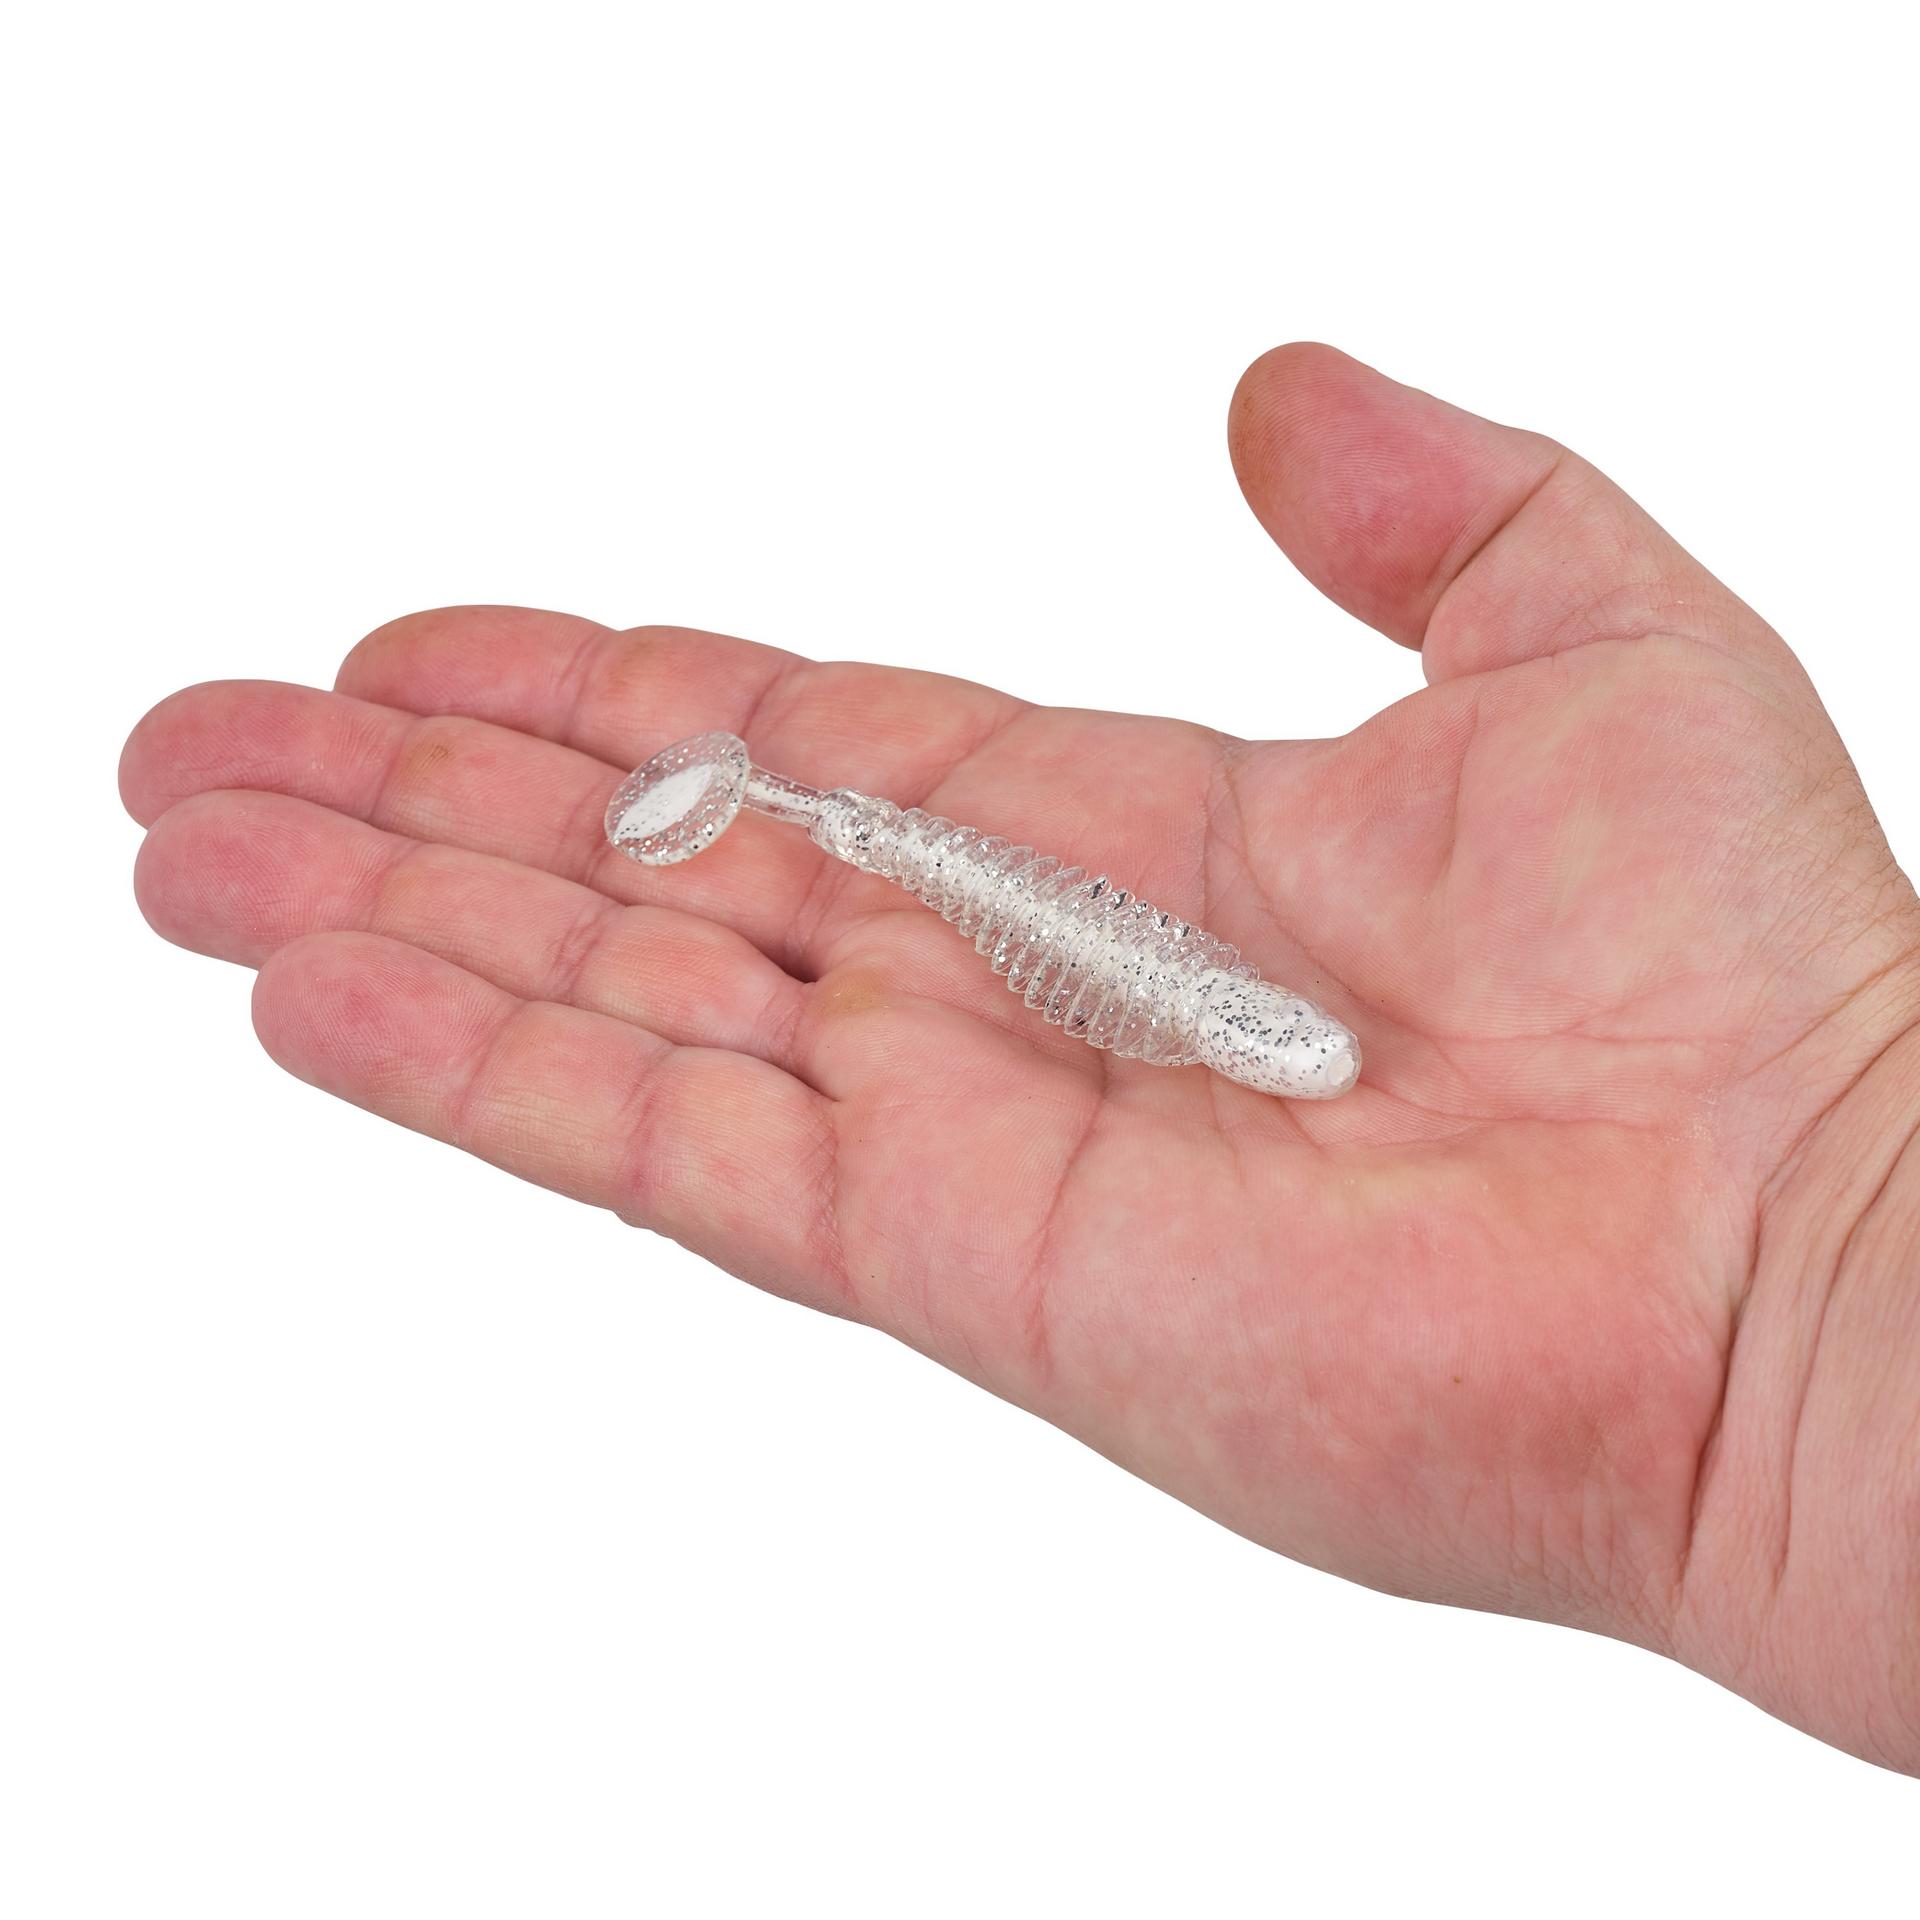 Berkley PowerBaitBonefish 3.25 WhiteIce HAND | Berkley Fishing